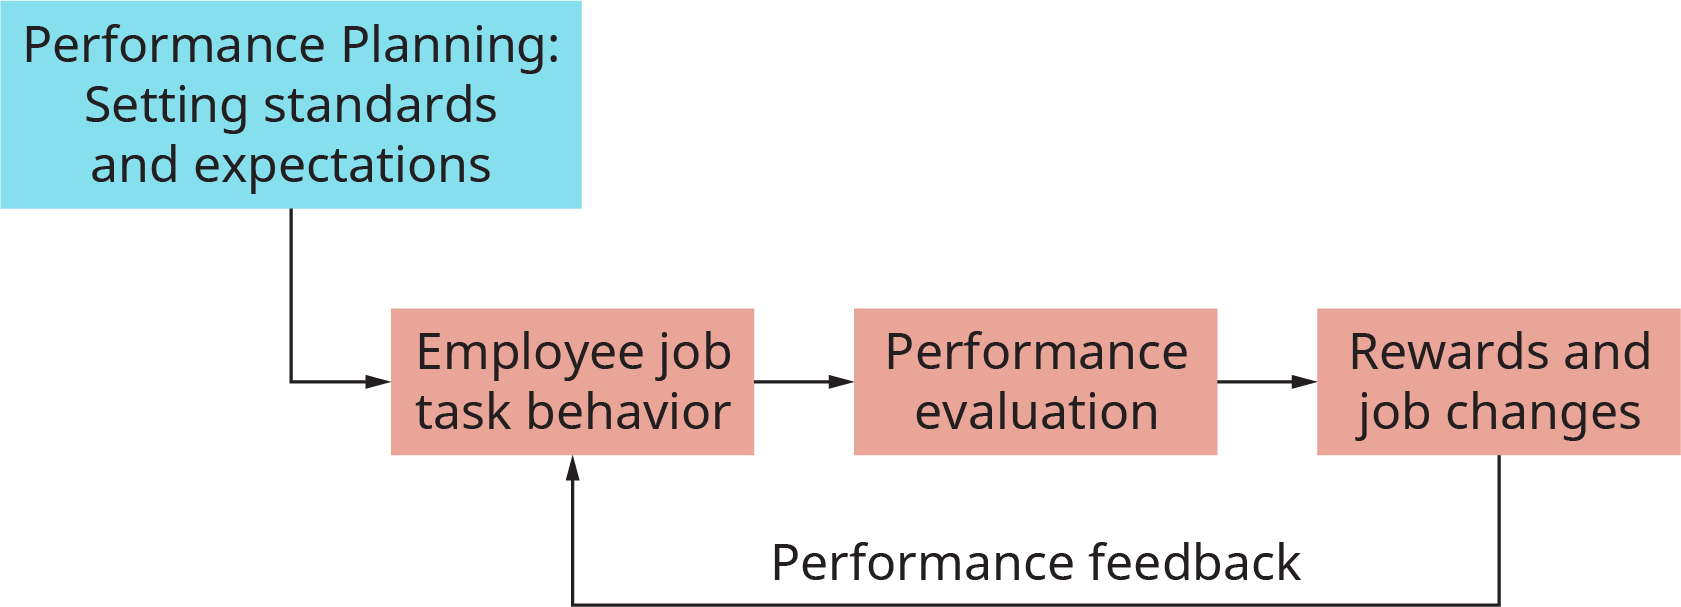 图表以标有 “绩效规划；设定标准和期望” 的方框开头。 这会影响到员工的工作任务行为。 这涉及绩效评估。 这转化为奖励和工作变动。 从这里开始，该流程返回到员工的工作任务行为，并被标记为绩效反馈。